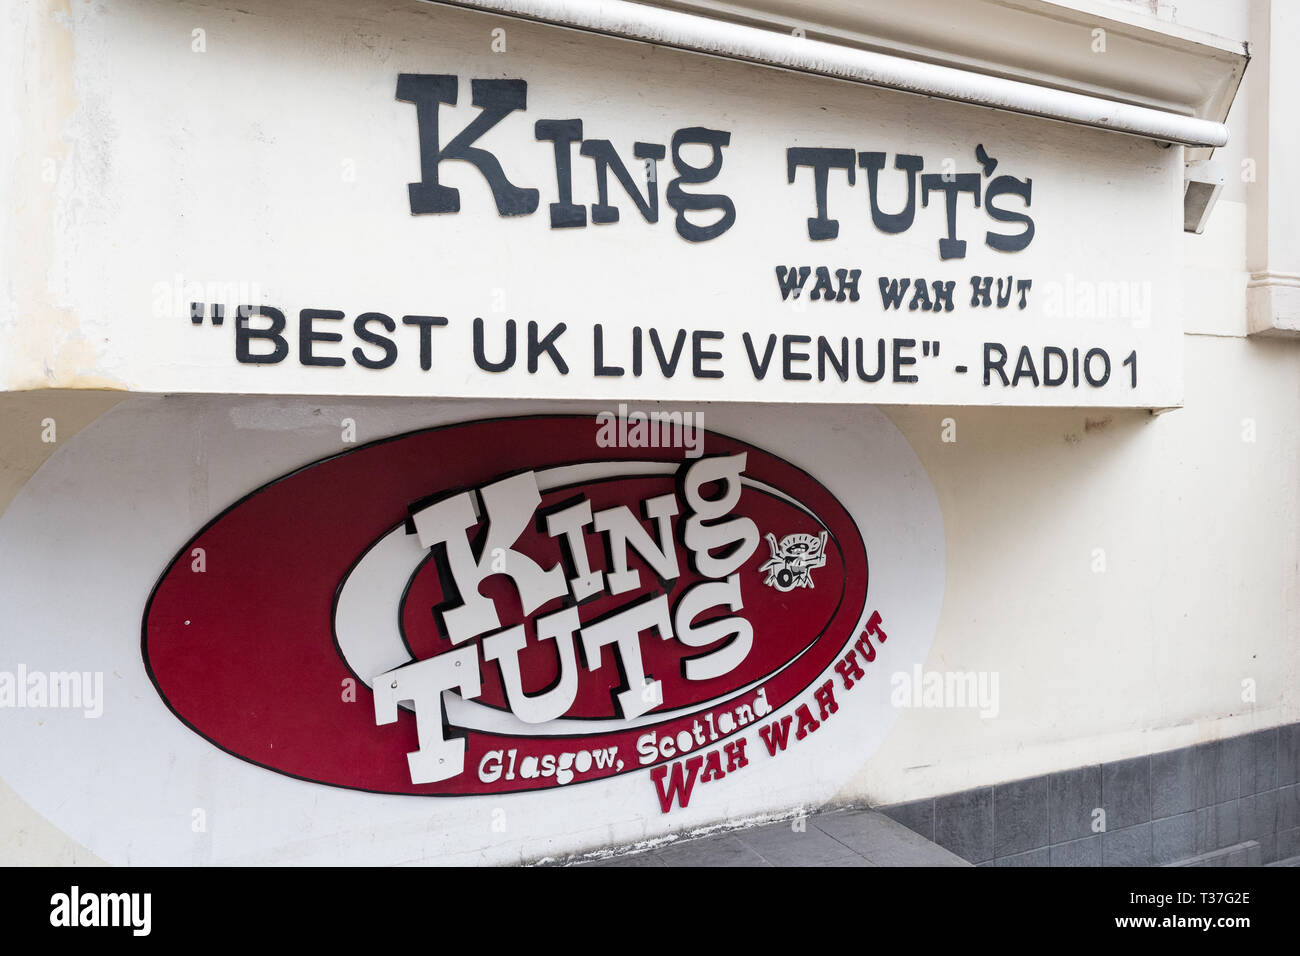 King Tuts Wah Wah Hut music venue, Glasgow, Écosse, Royaume-Uni Banque D'Images